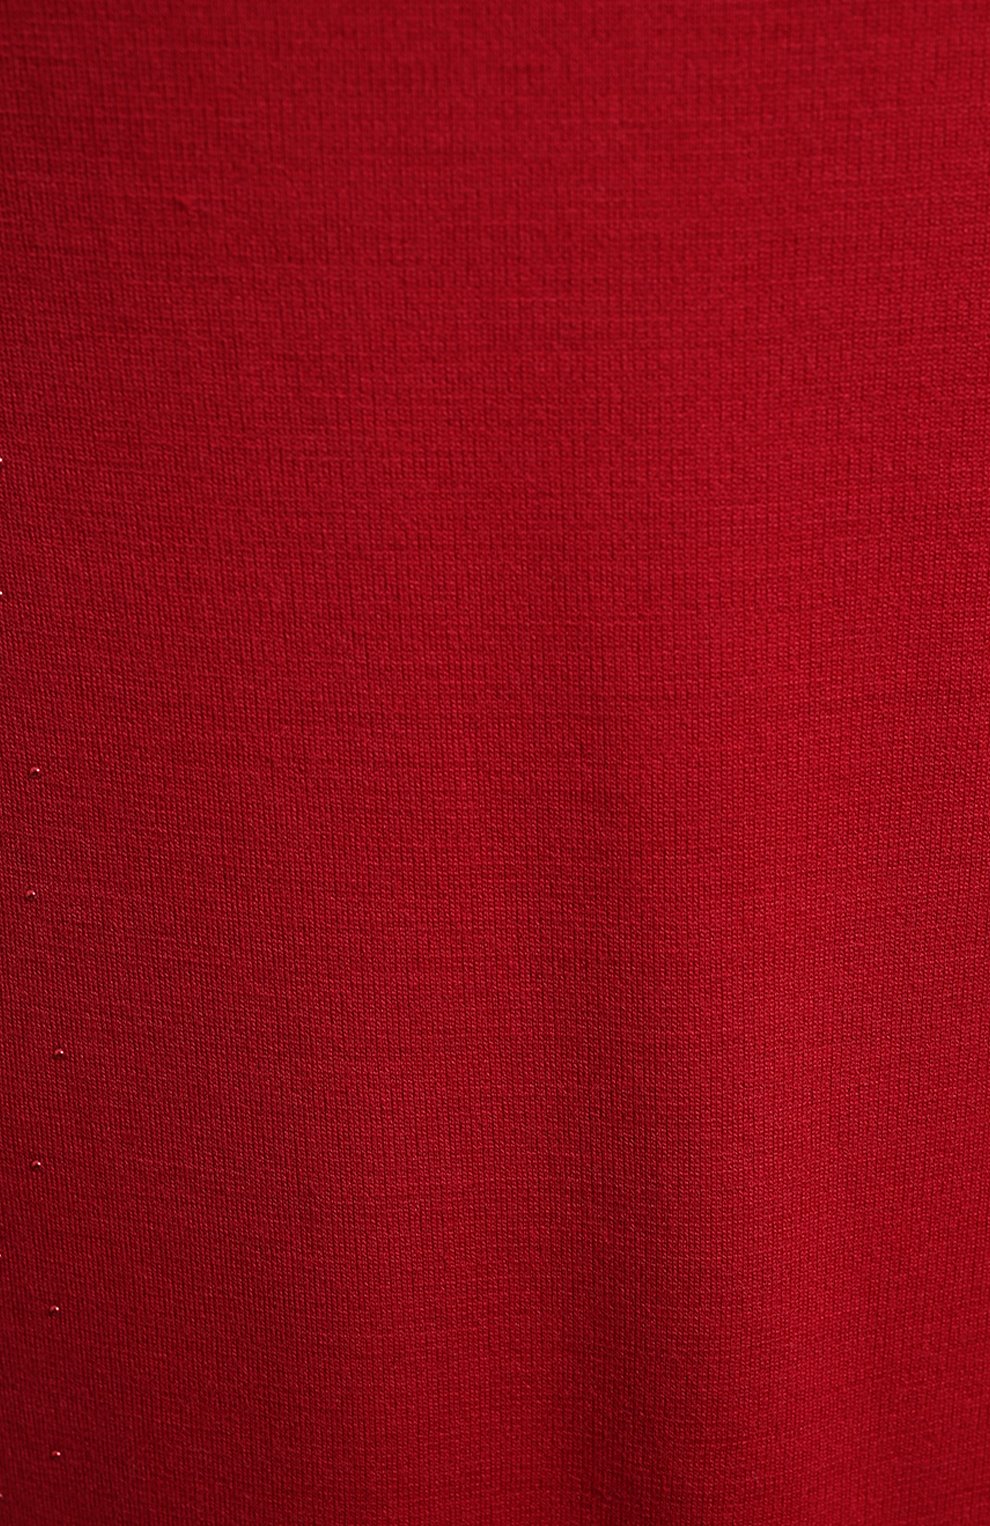 Платье из шерсти и вискозы | St. John | Красный - 3